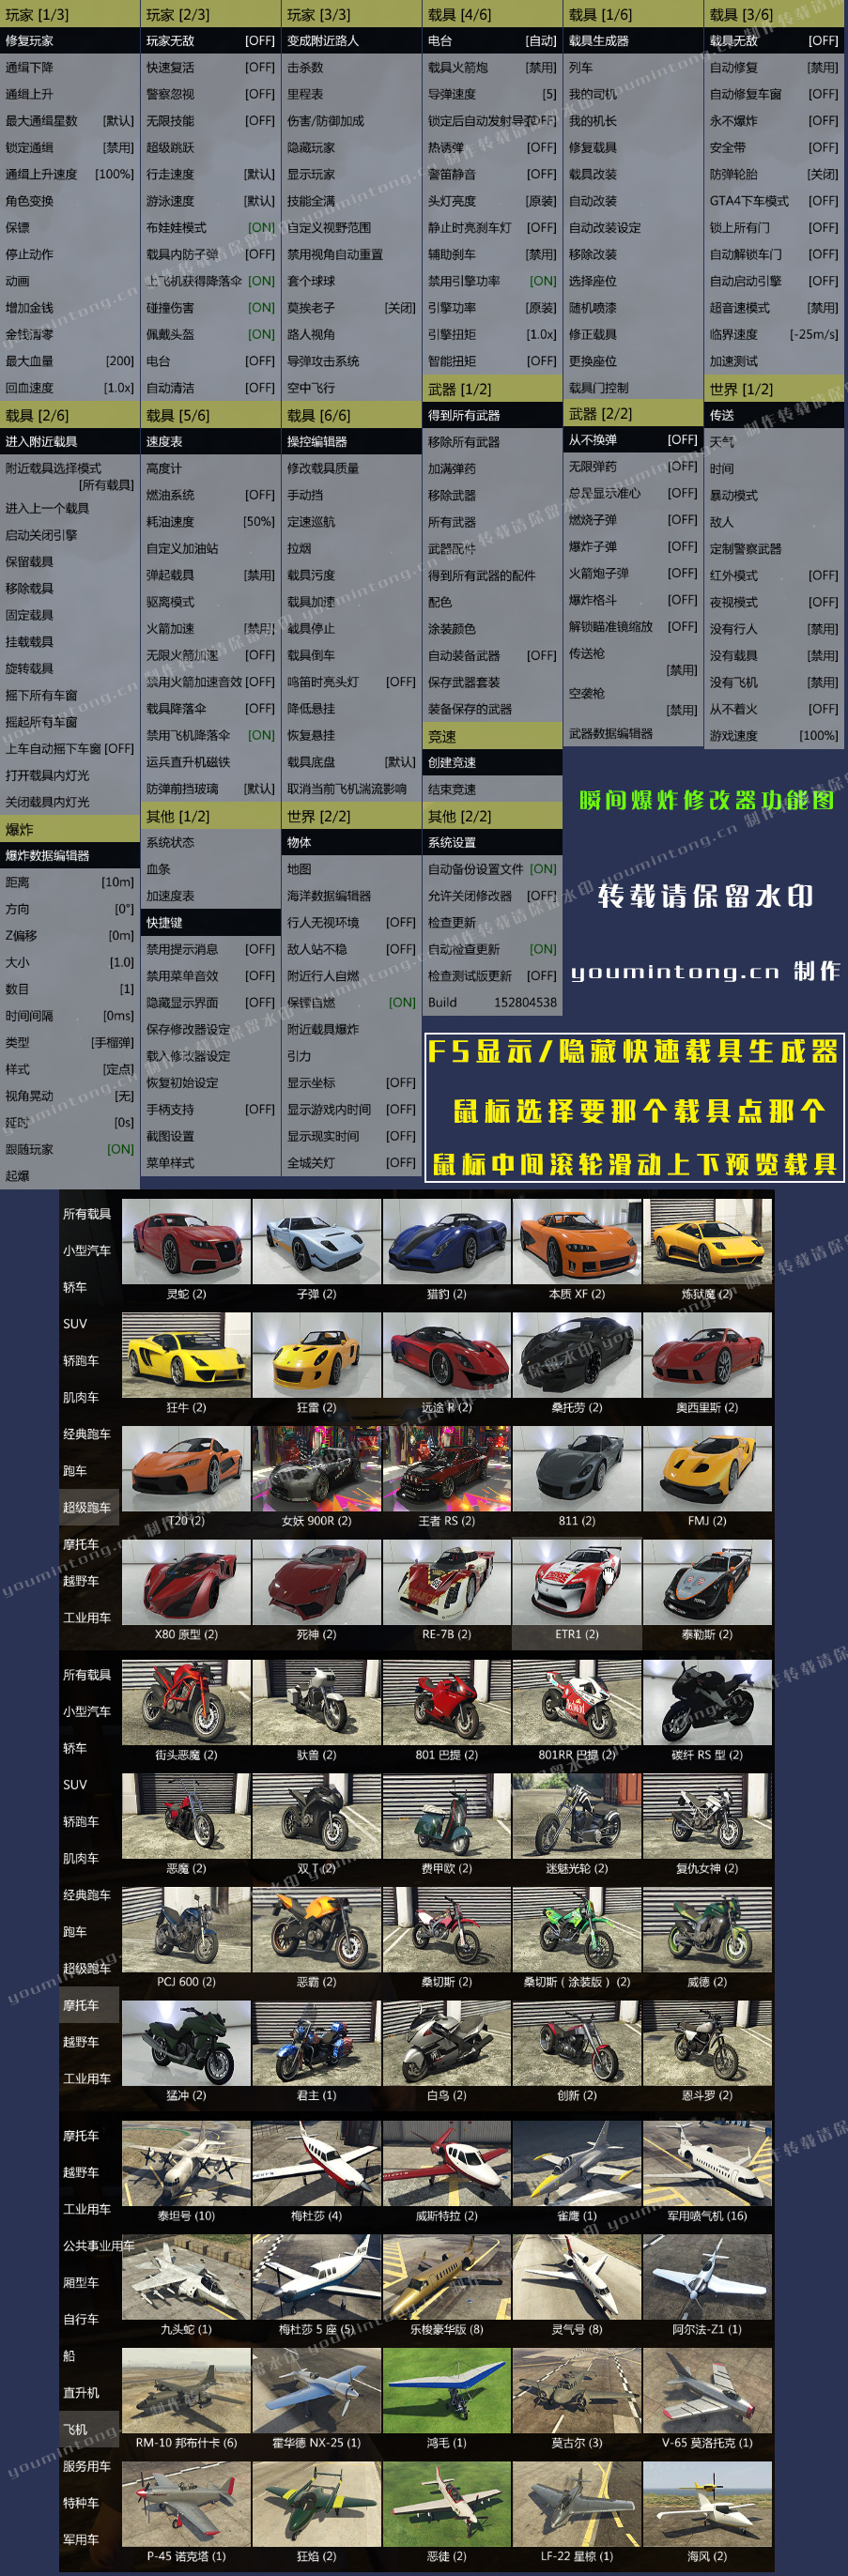 《侠盗猎车手5》GTA5瞬间爆炸修改器 最新版 中文英文繁体三合一版本 小白一键启动版 下载